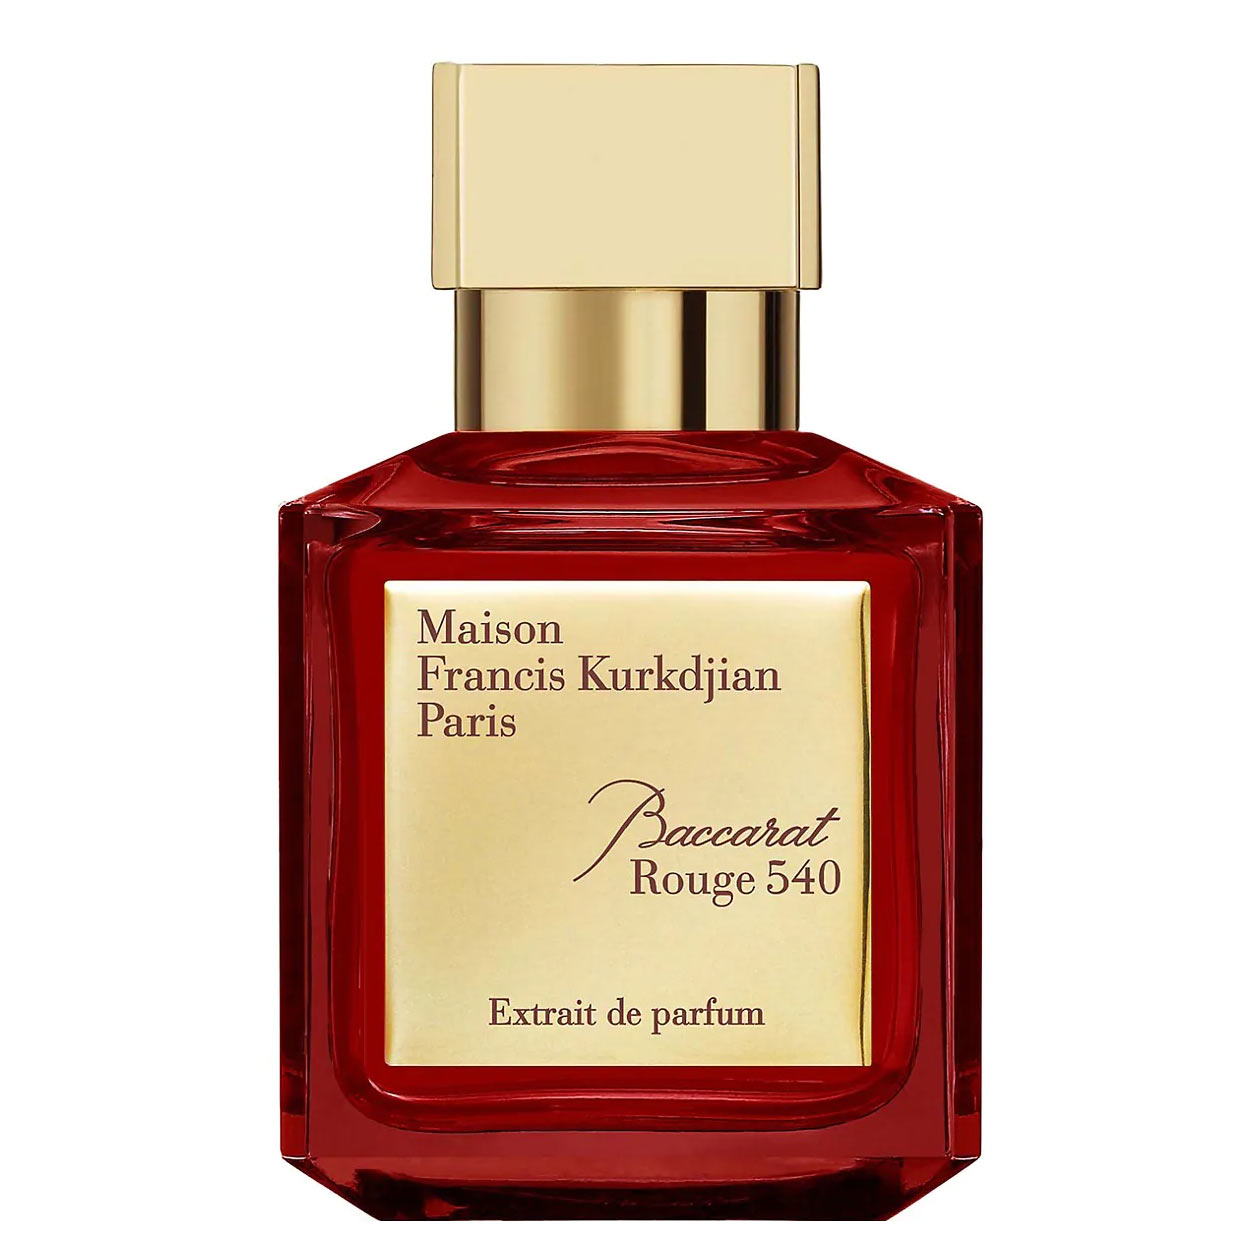 Baccarat Rouge 540 Extrait de Parfum Maison Francis Kurkdjian Image